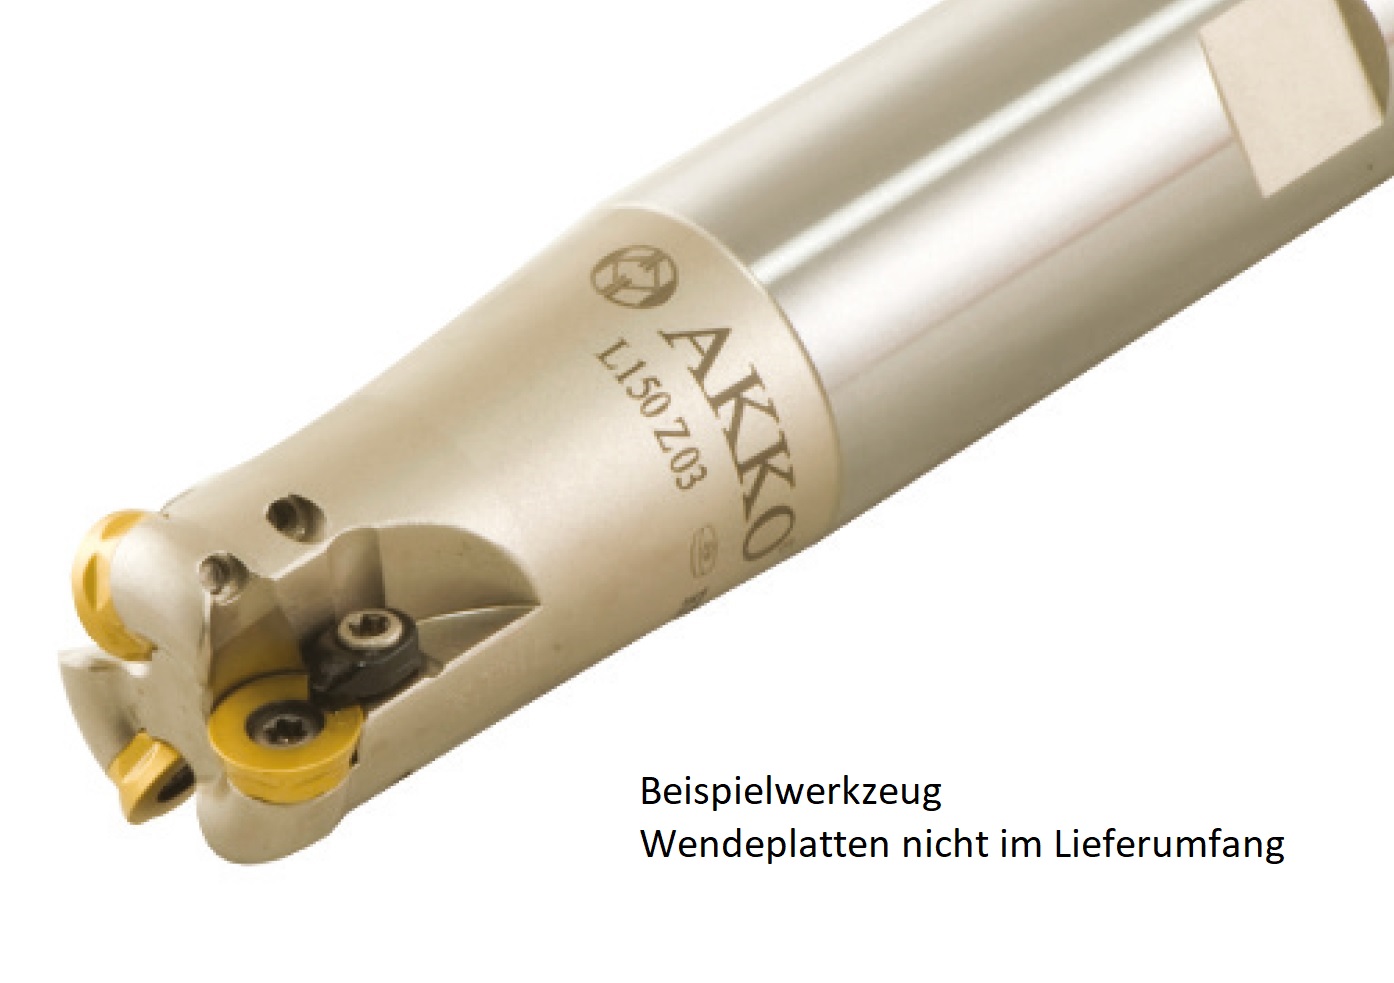 AKKO-Hochvorschub-Schaftfräser ø 32 mm für Wendeplatten, kompatibel mit ISO RD.. 1003
Schaft-ø 32, ohne Innenkühlung, Z=2